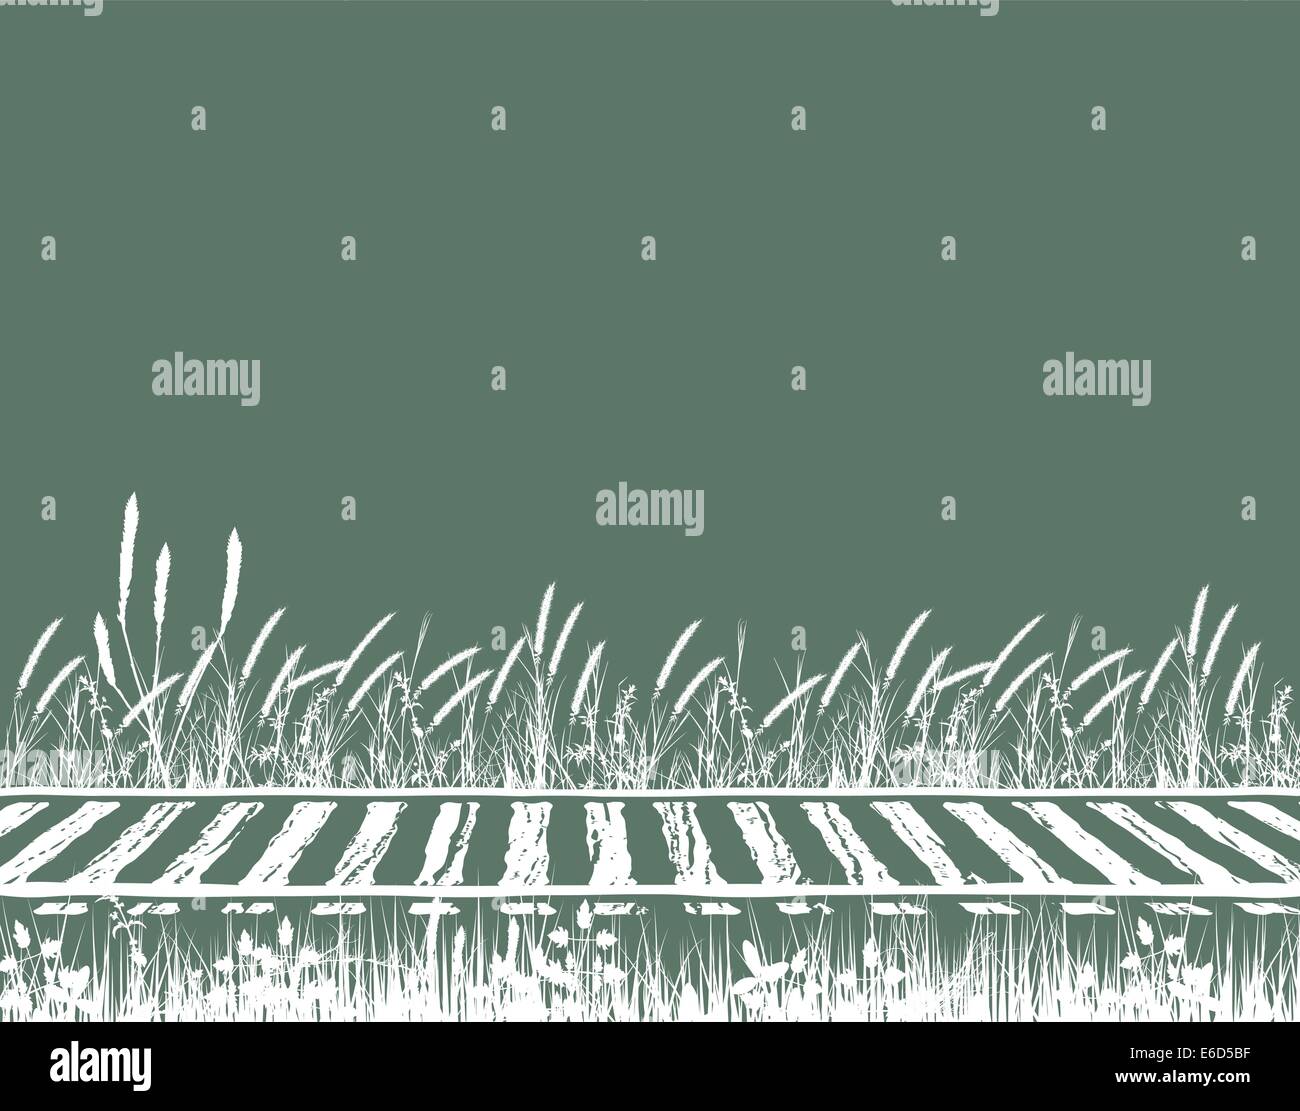 Editierbare Vektor-Illustration der grasbewachsenen Gleisanlagen Stock Vektor